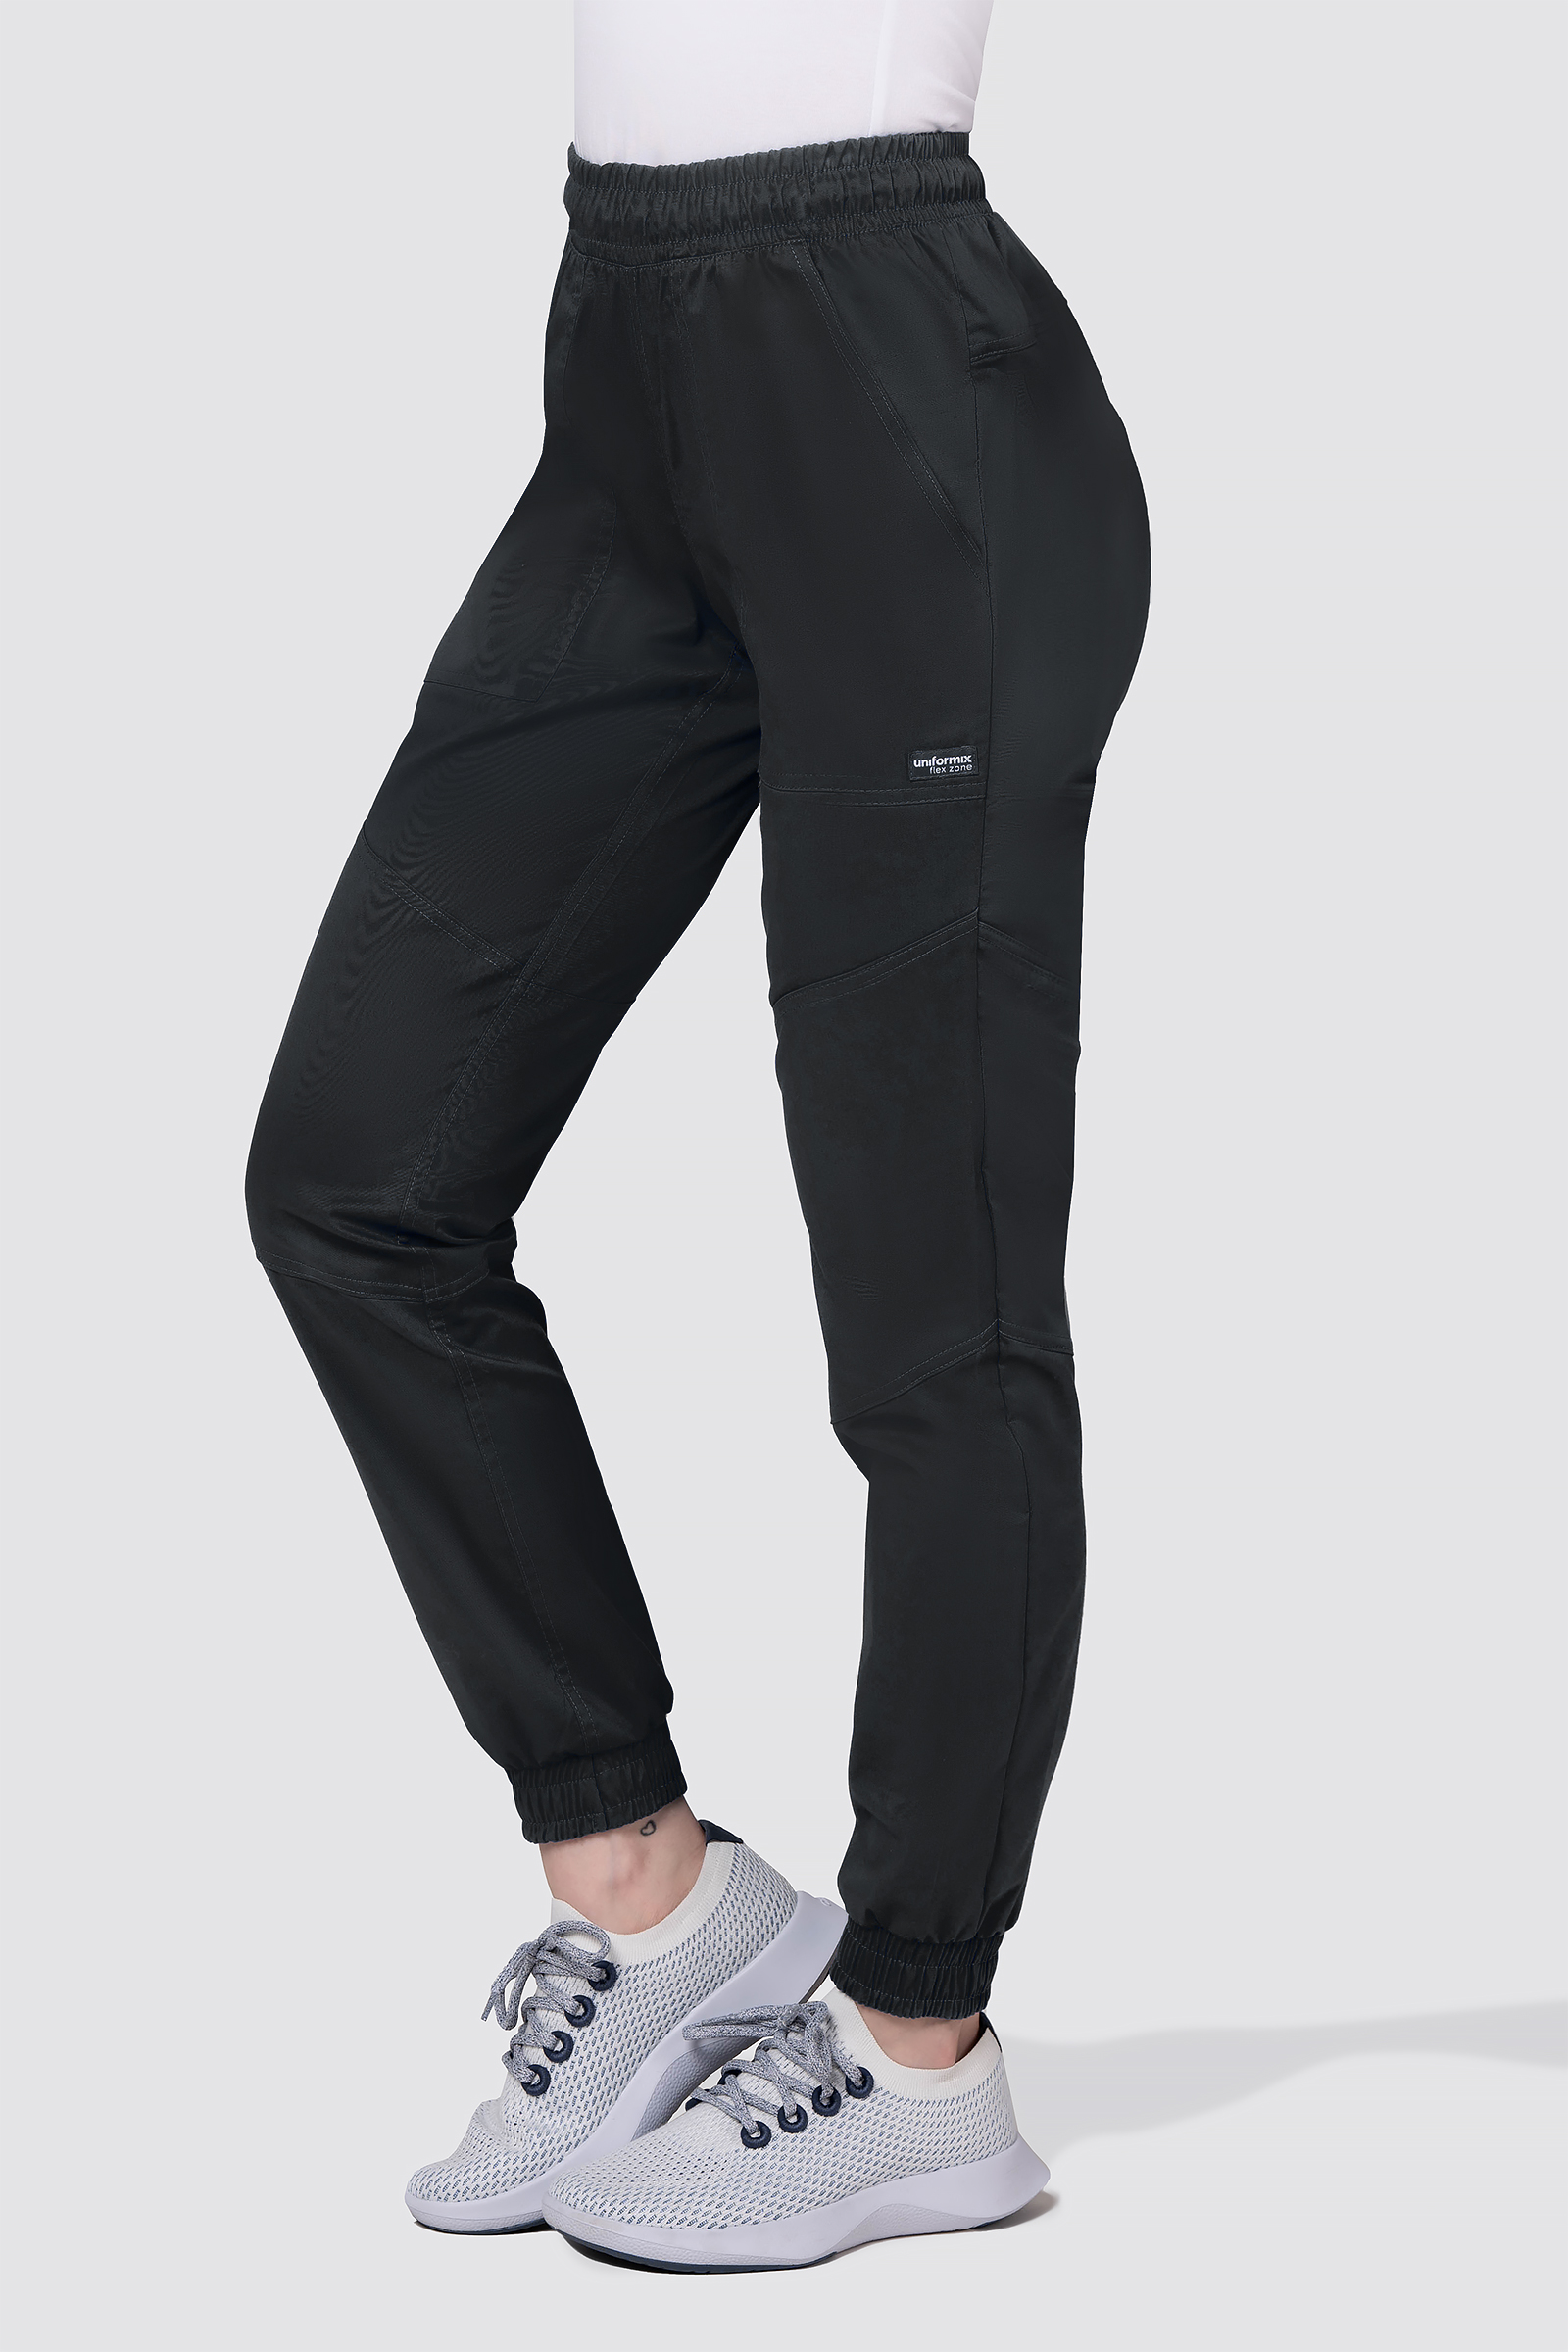 Spodnie medyczne damskie, joggery Uniformix FLEX ZONE, FZ2056